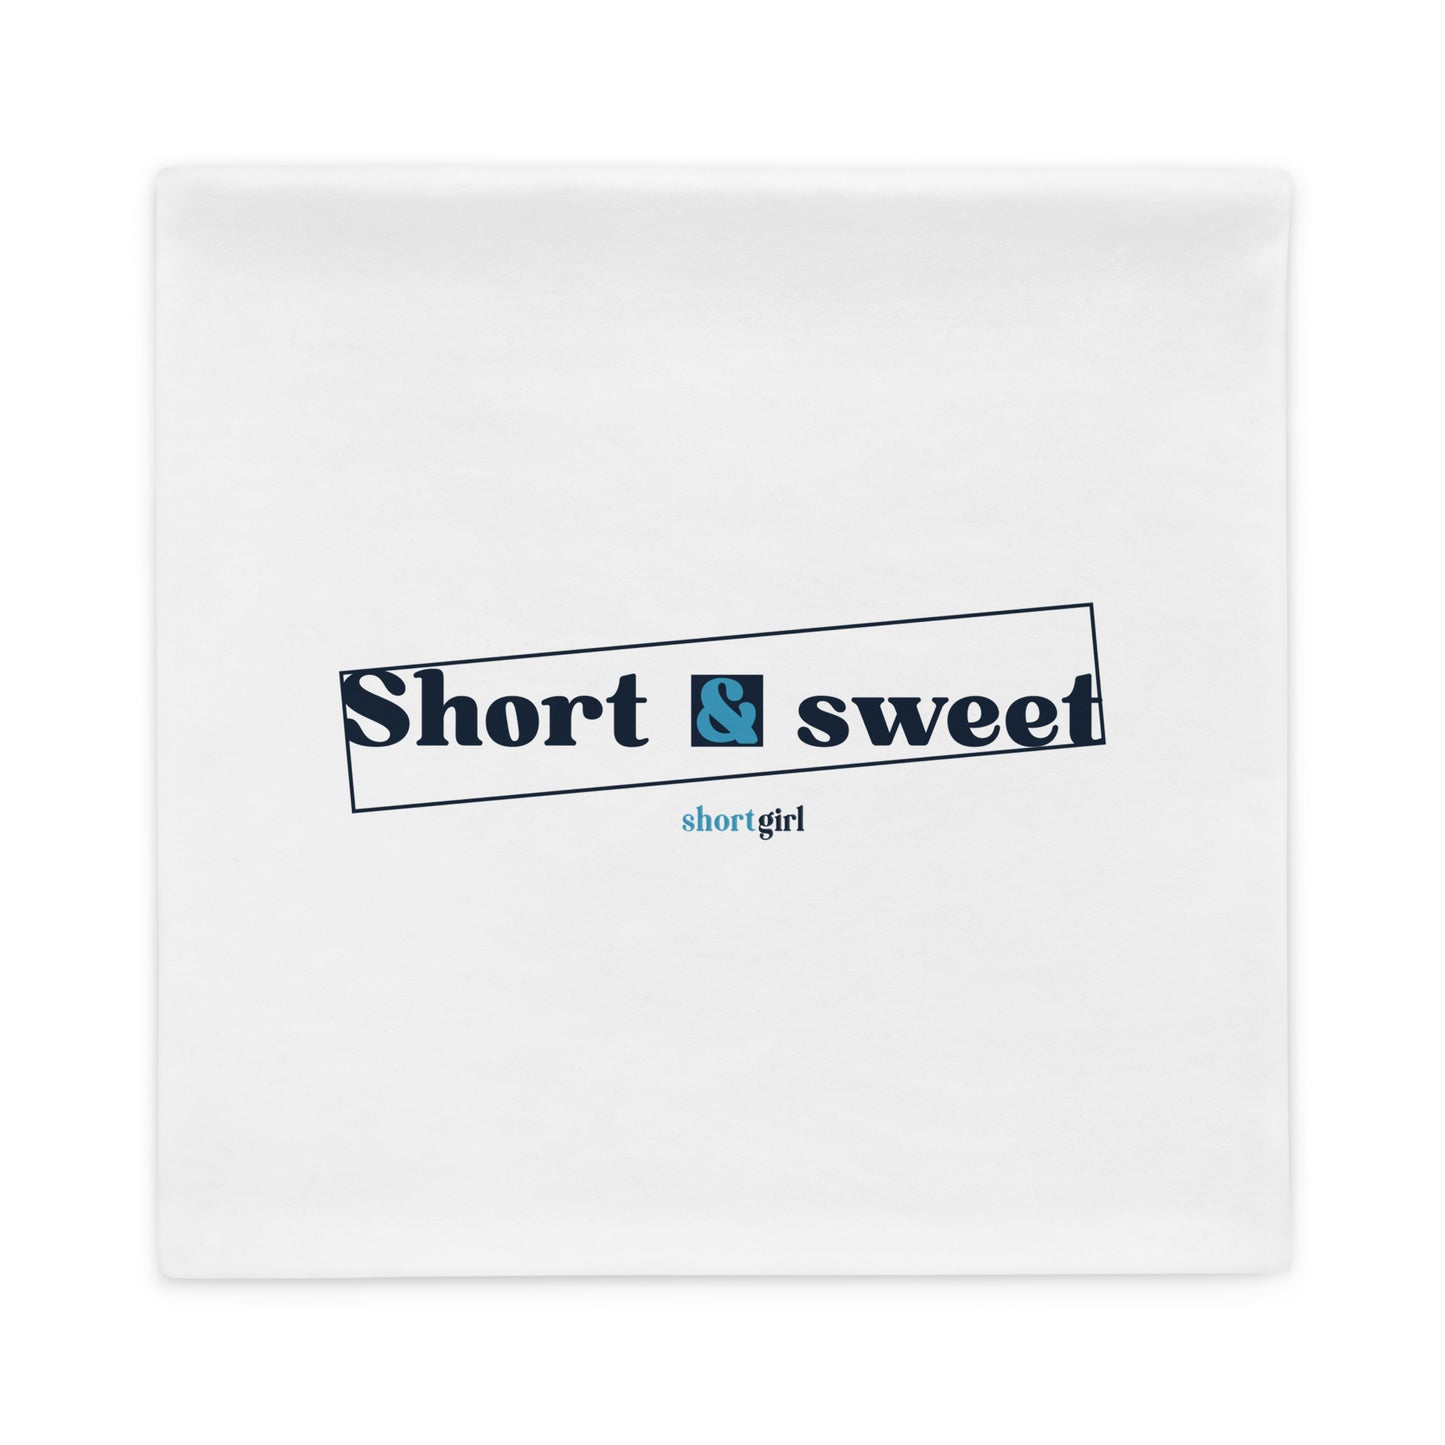 Pillow Case - Short & sweet